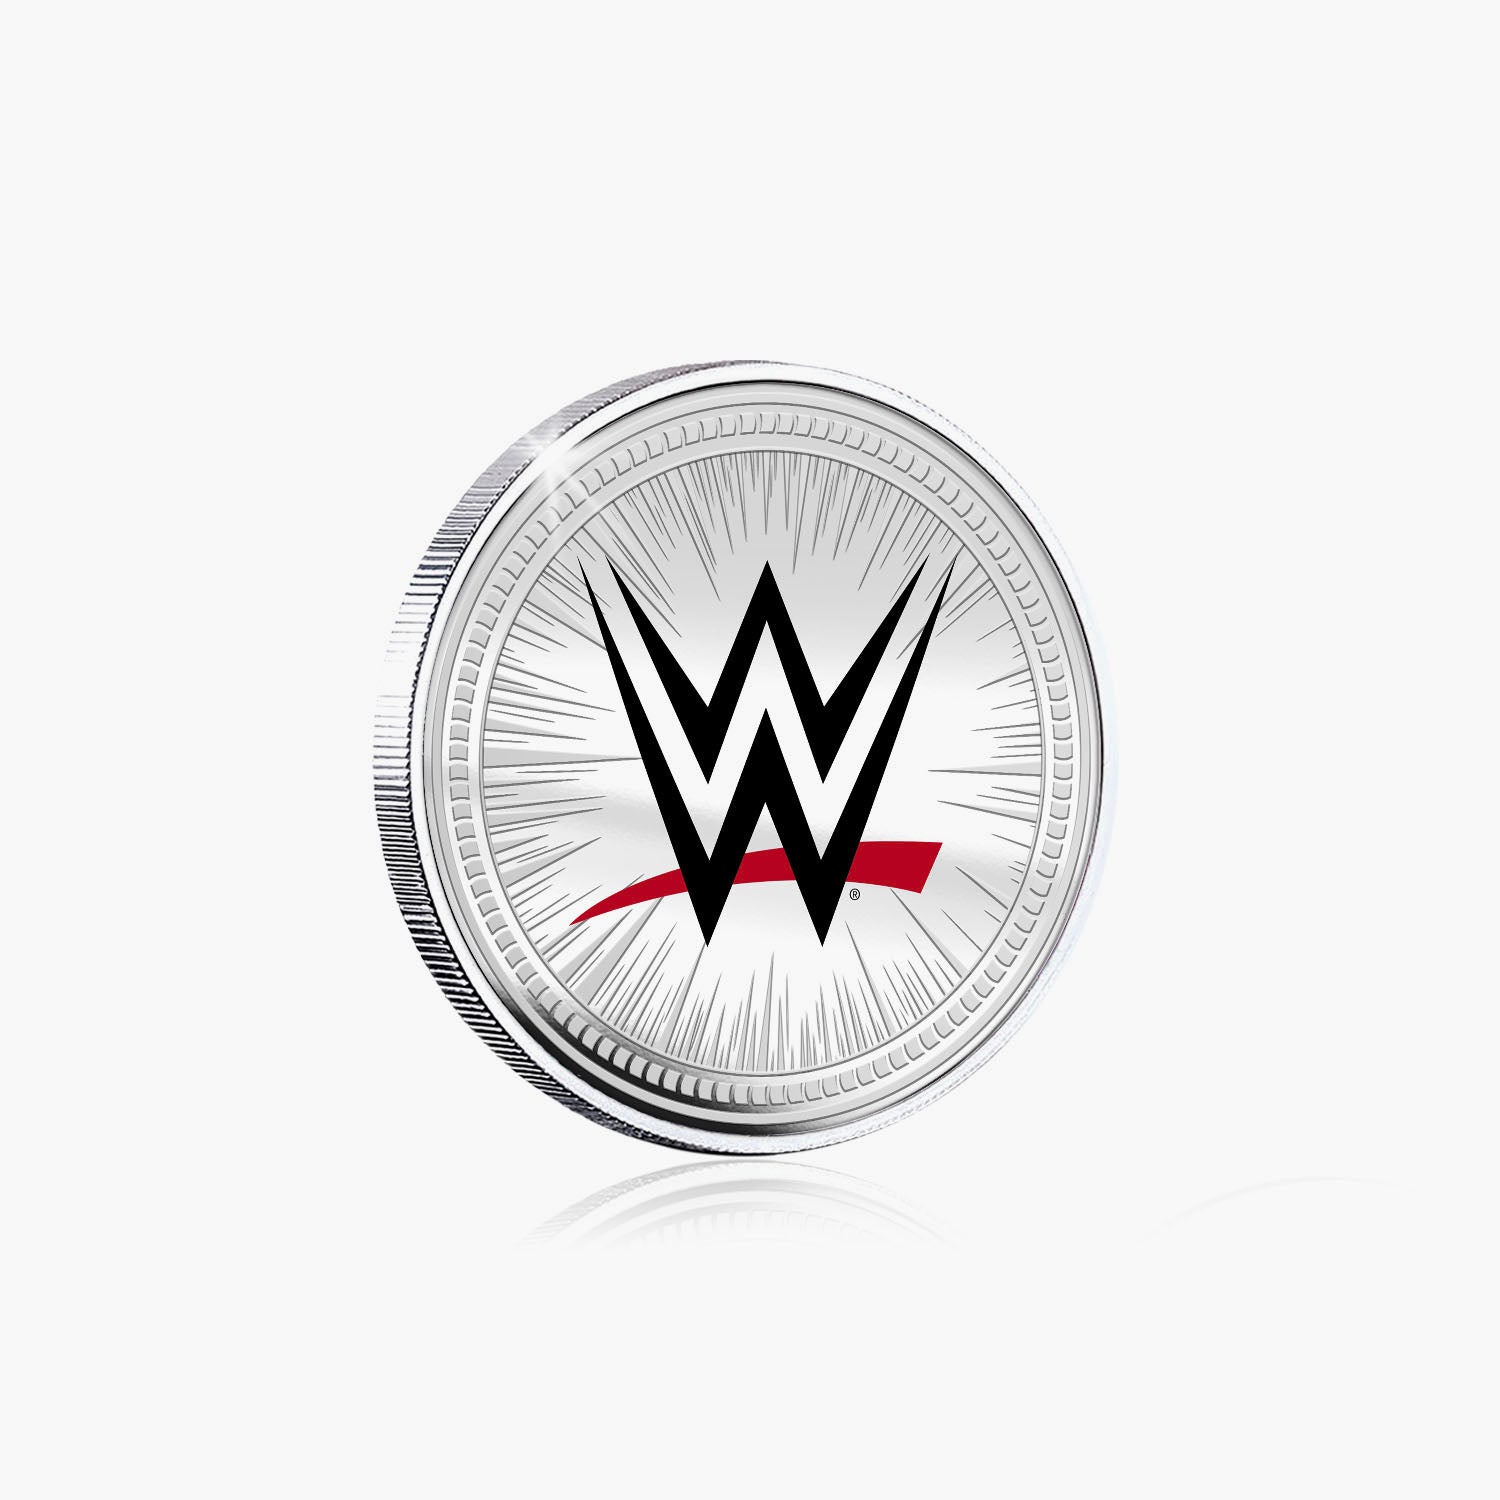 Collection commémorative WWE - Eddie Guerrero - Commémorative plaquée argent 32 mm